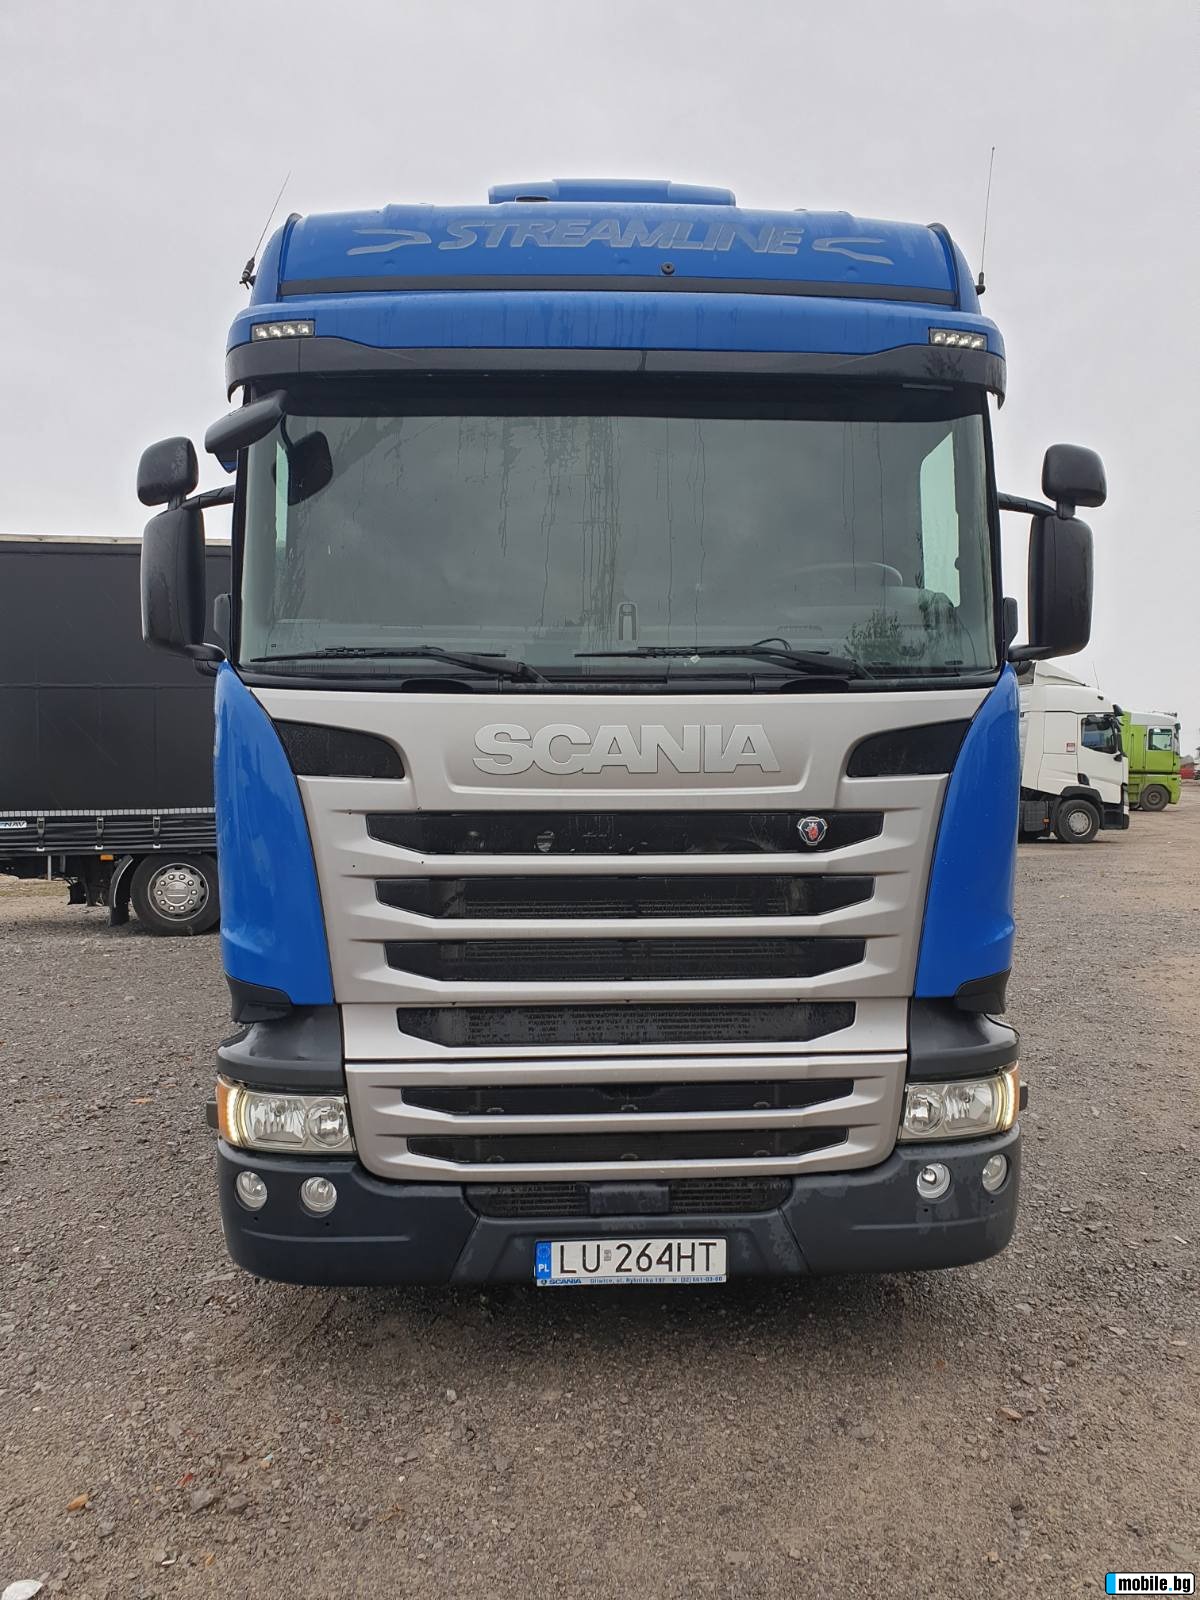 Scania R 450 R 410  EGR, ,  | Mobile.bg   2